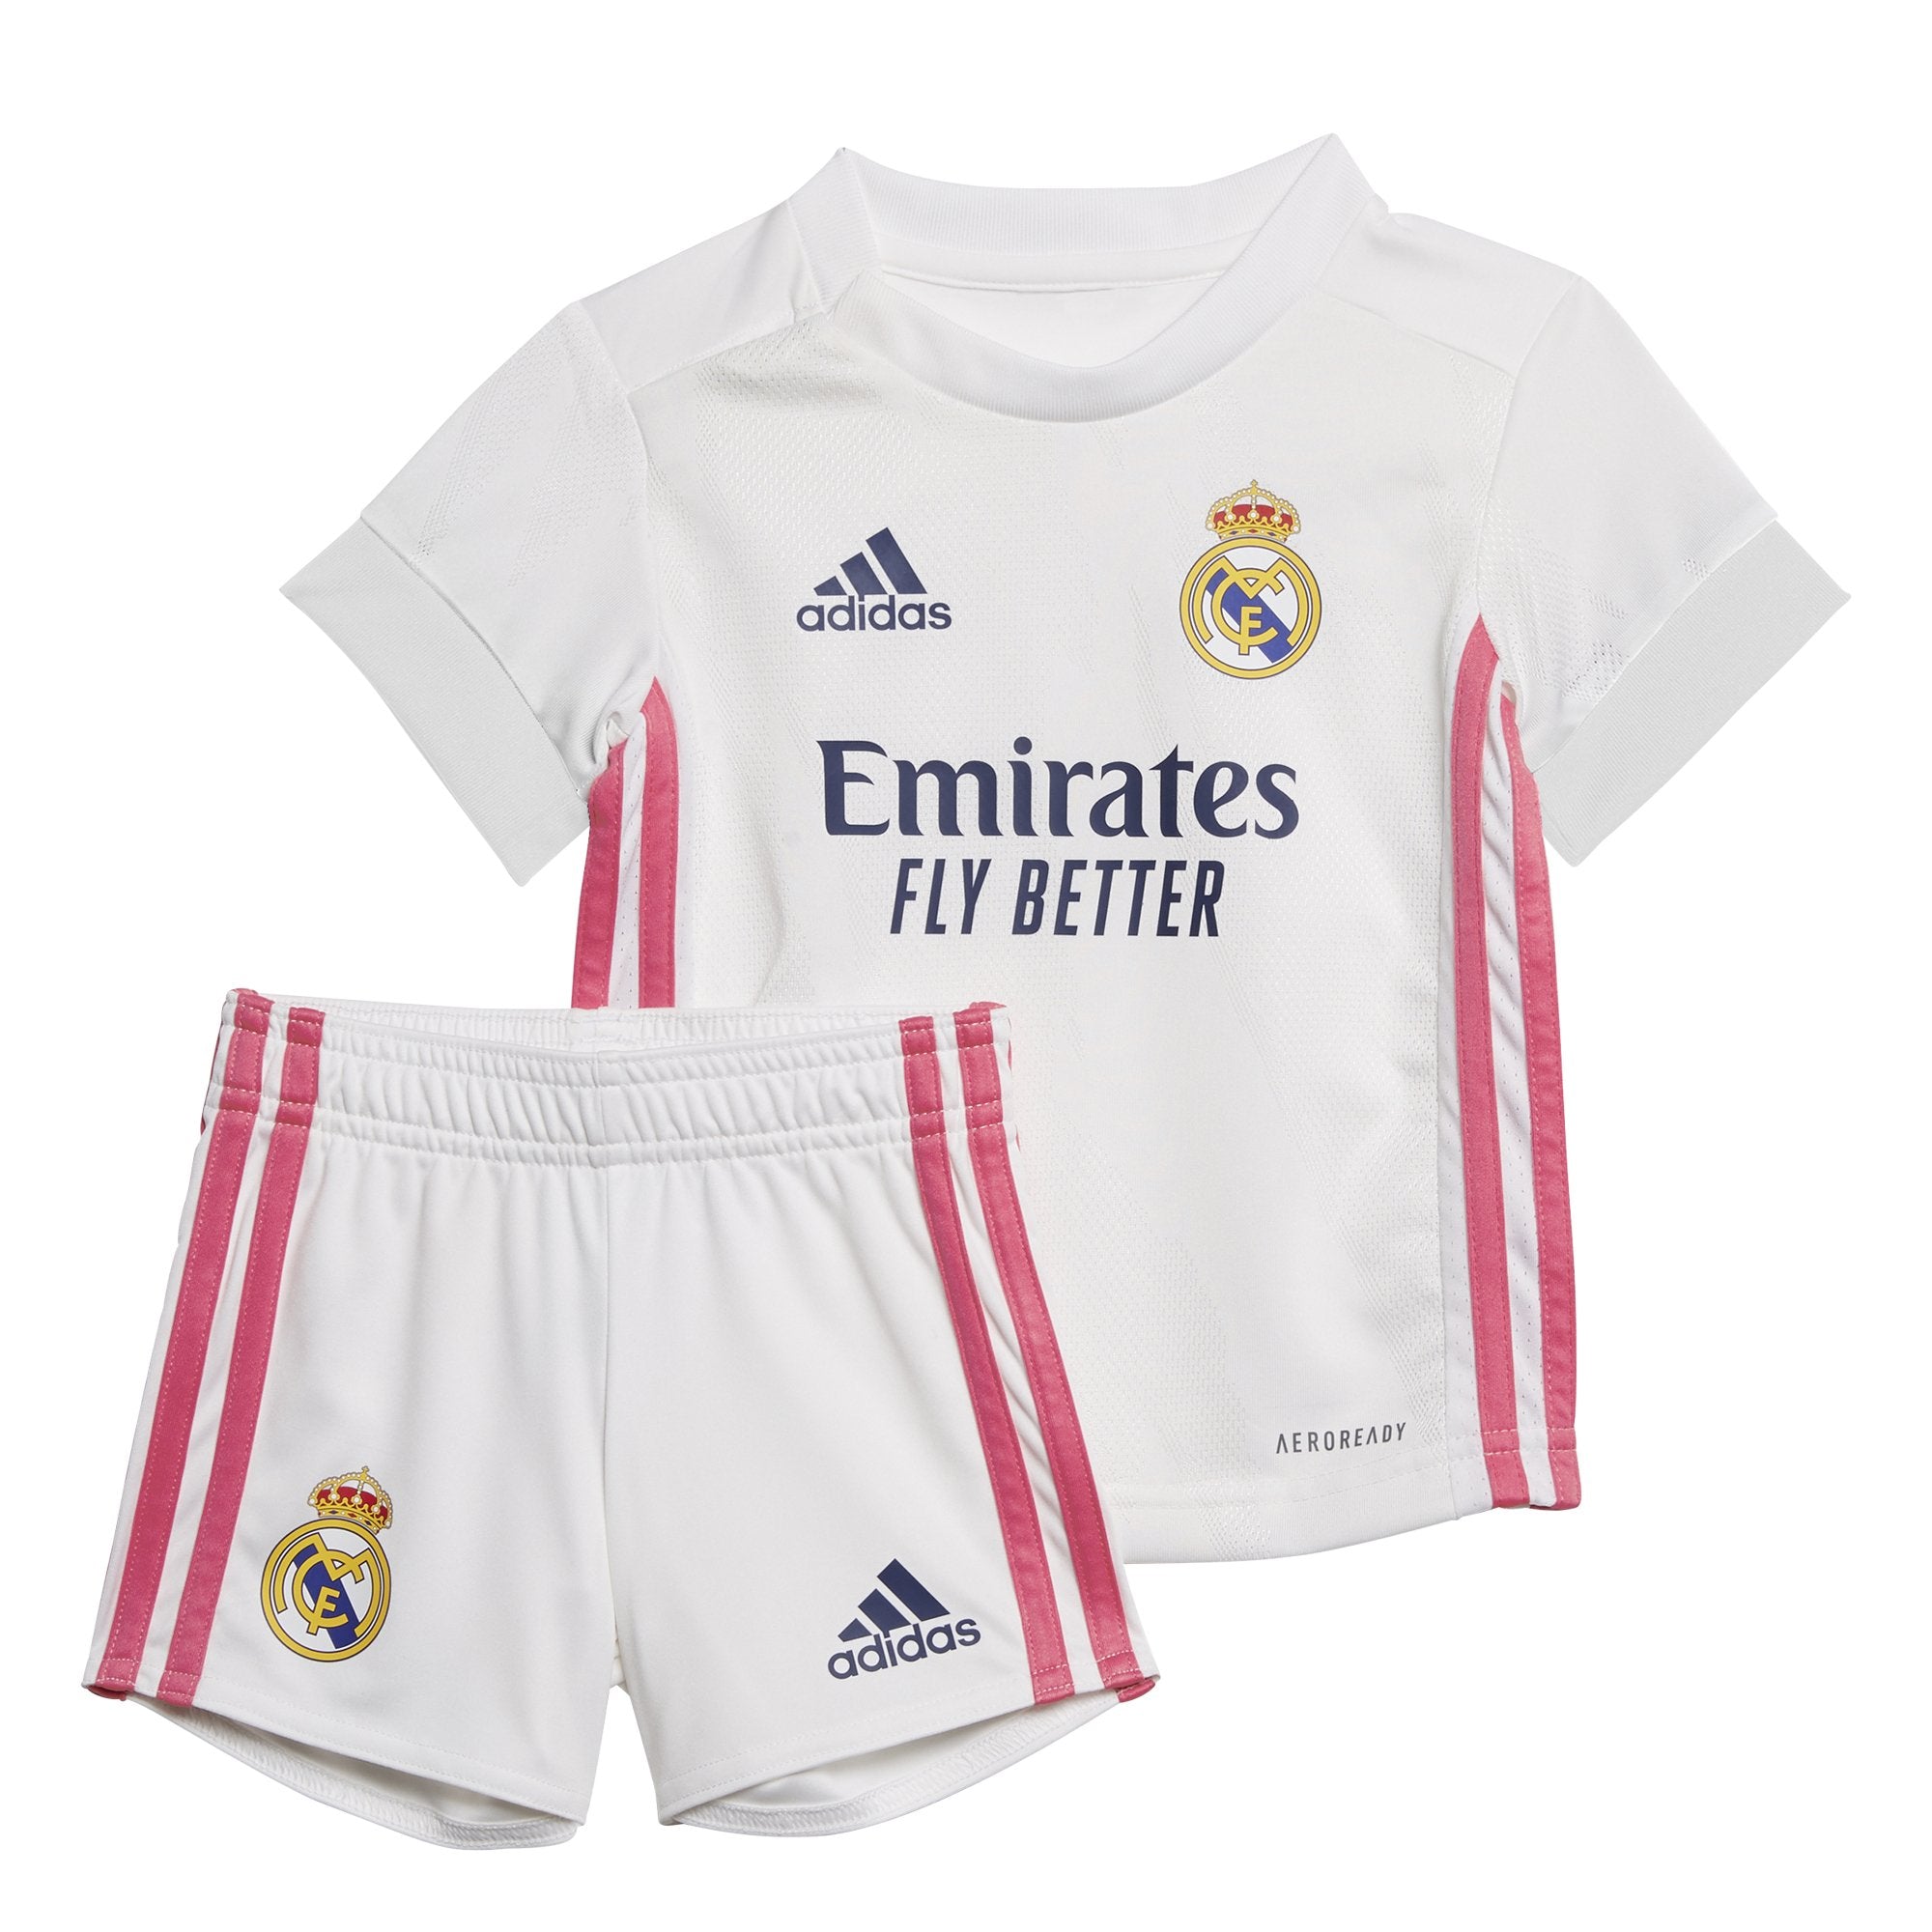 Afkeer karton emulsie Real Madrid Baby Home Kit 20-21 White - Real Madrid CF | US Store